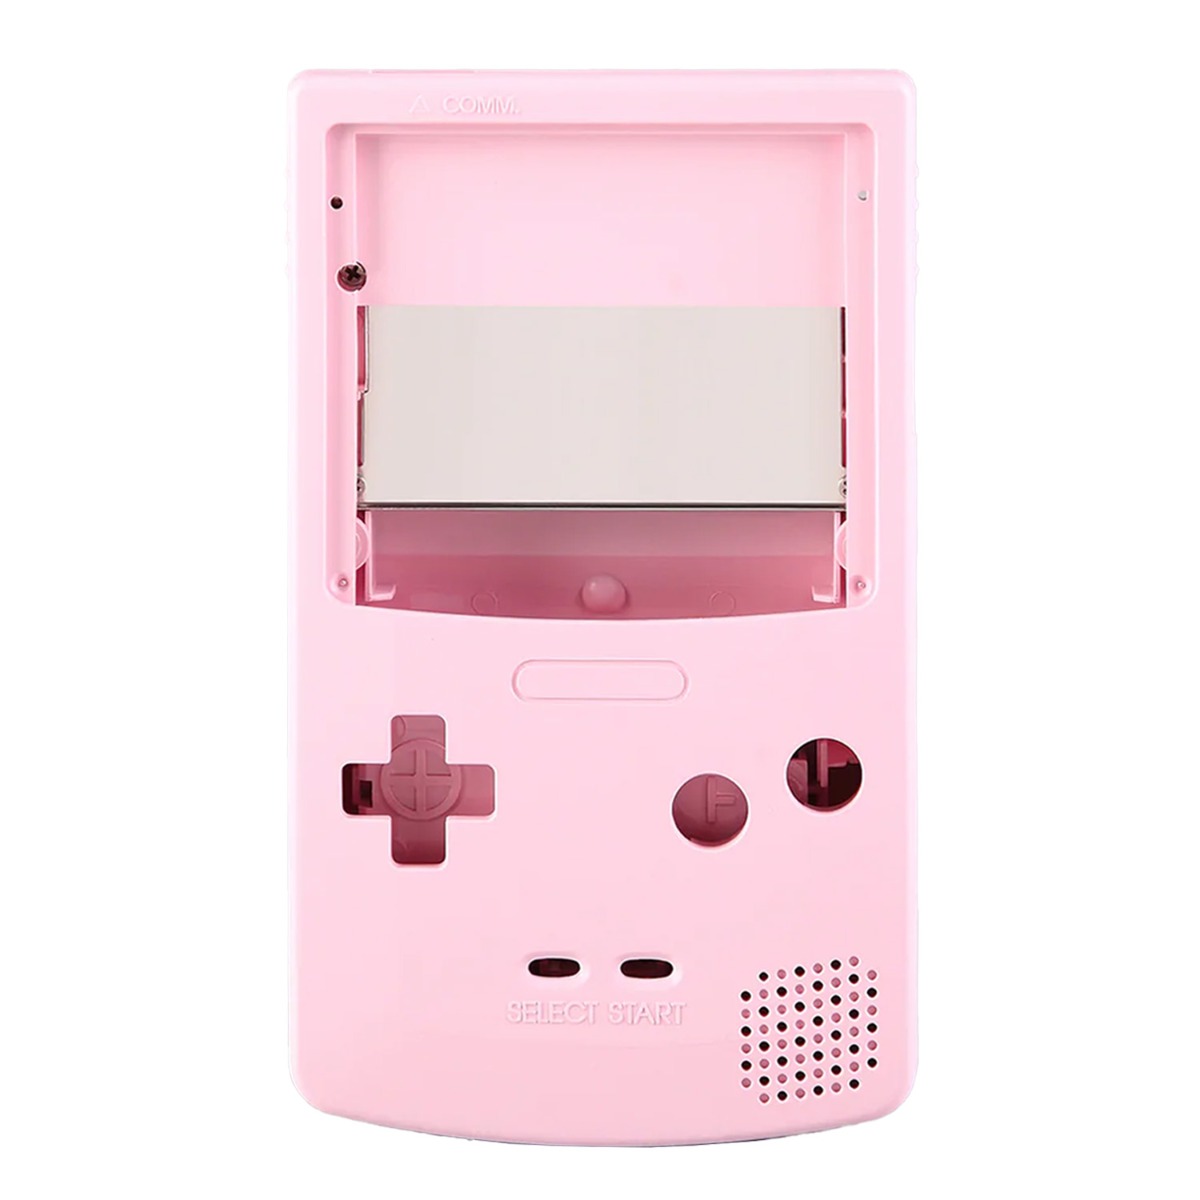 Gehäuse (Pink) für Game Boy Color